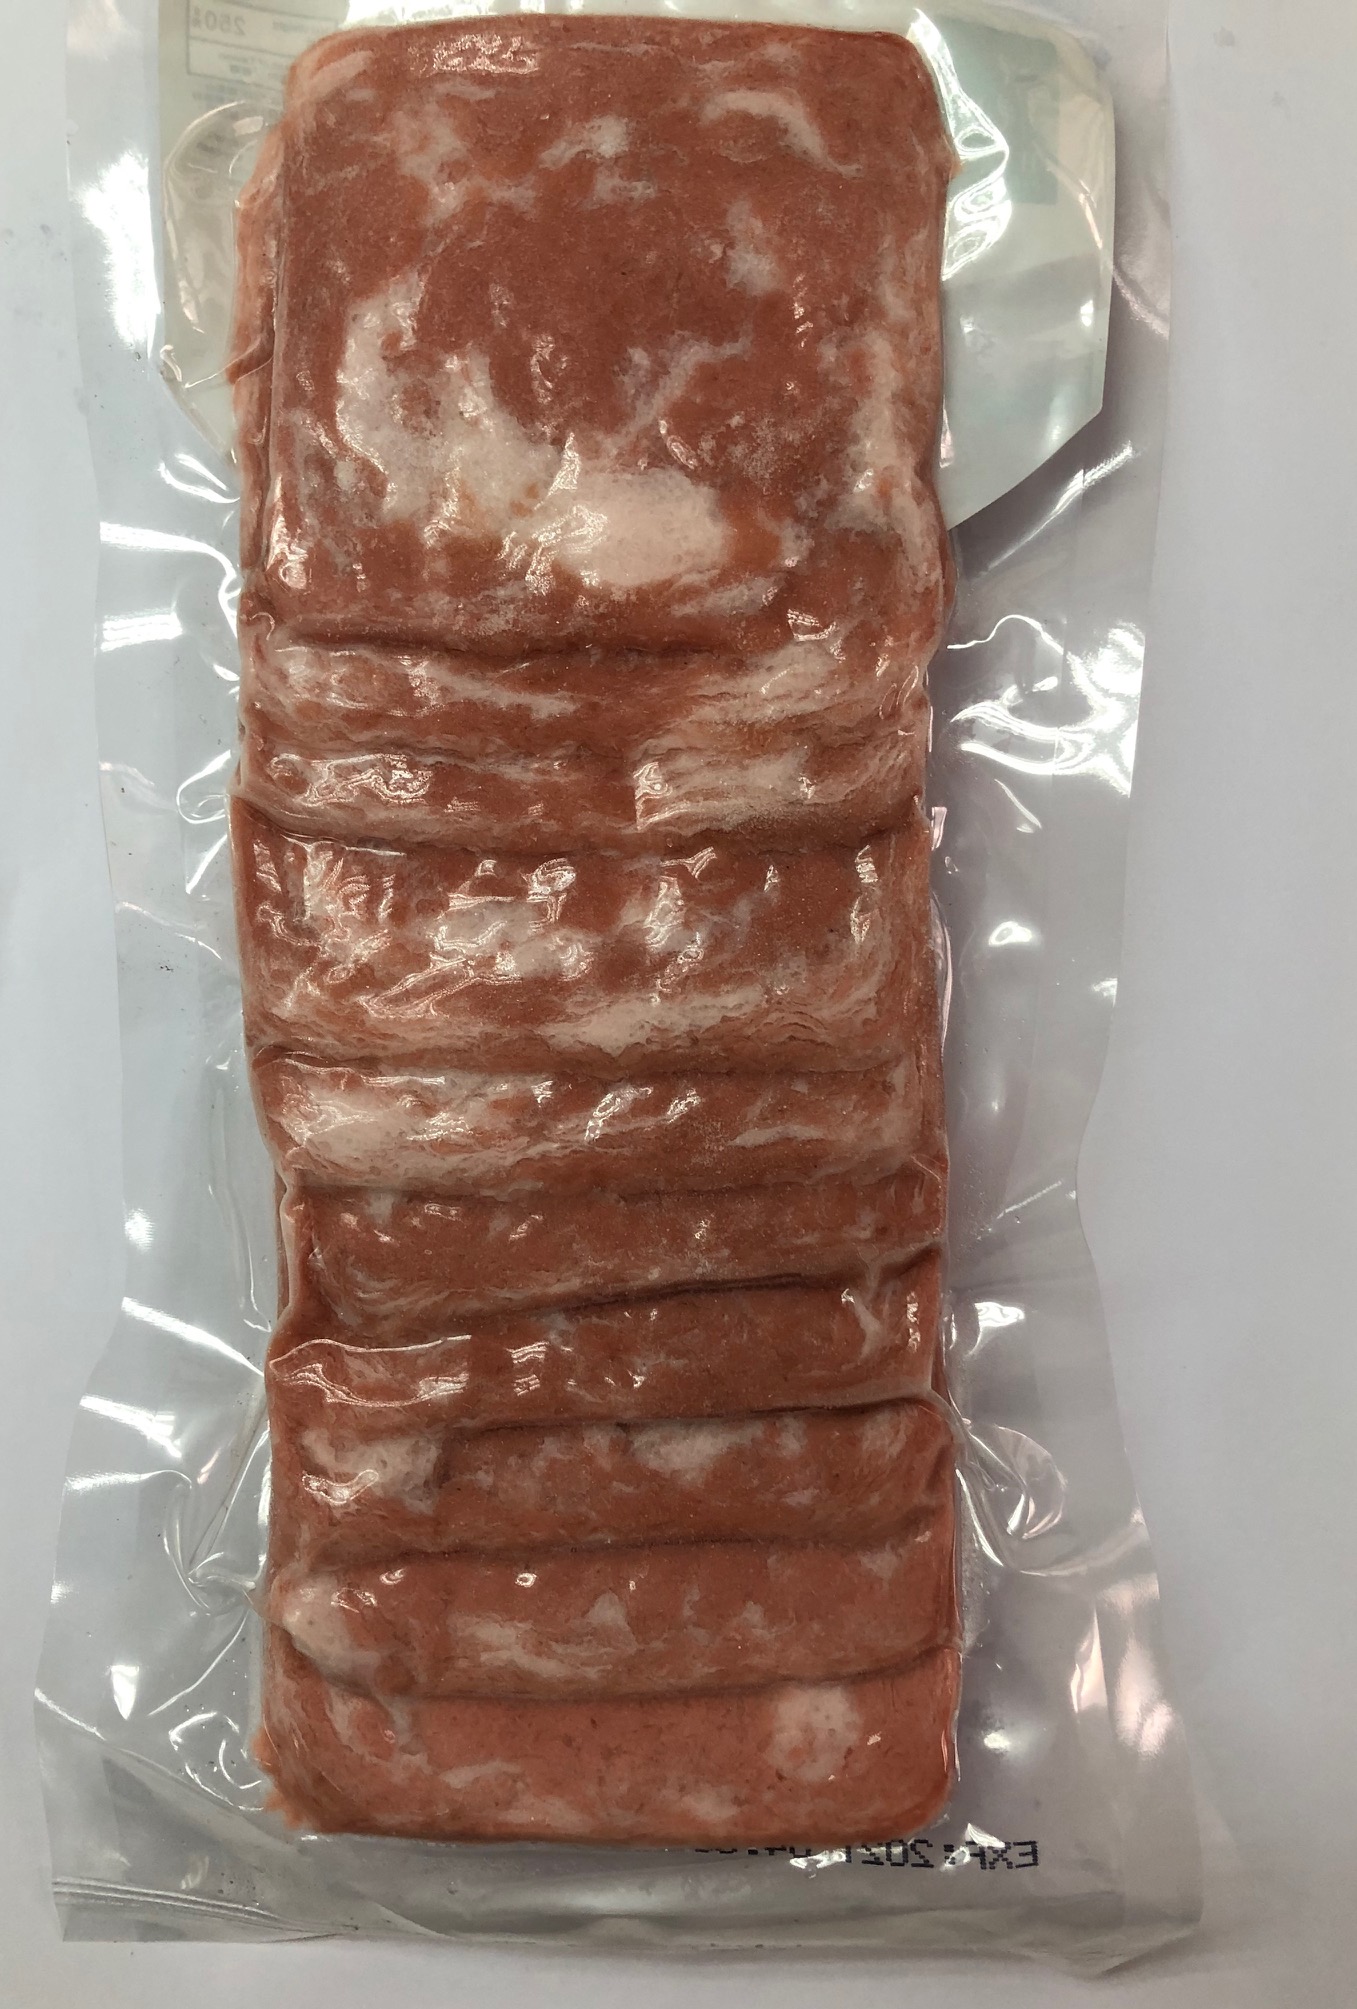 Ham Slices (10 pcs/pack)(Vegan)